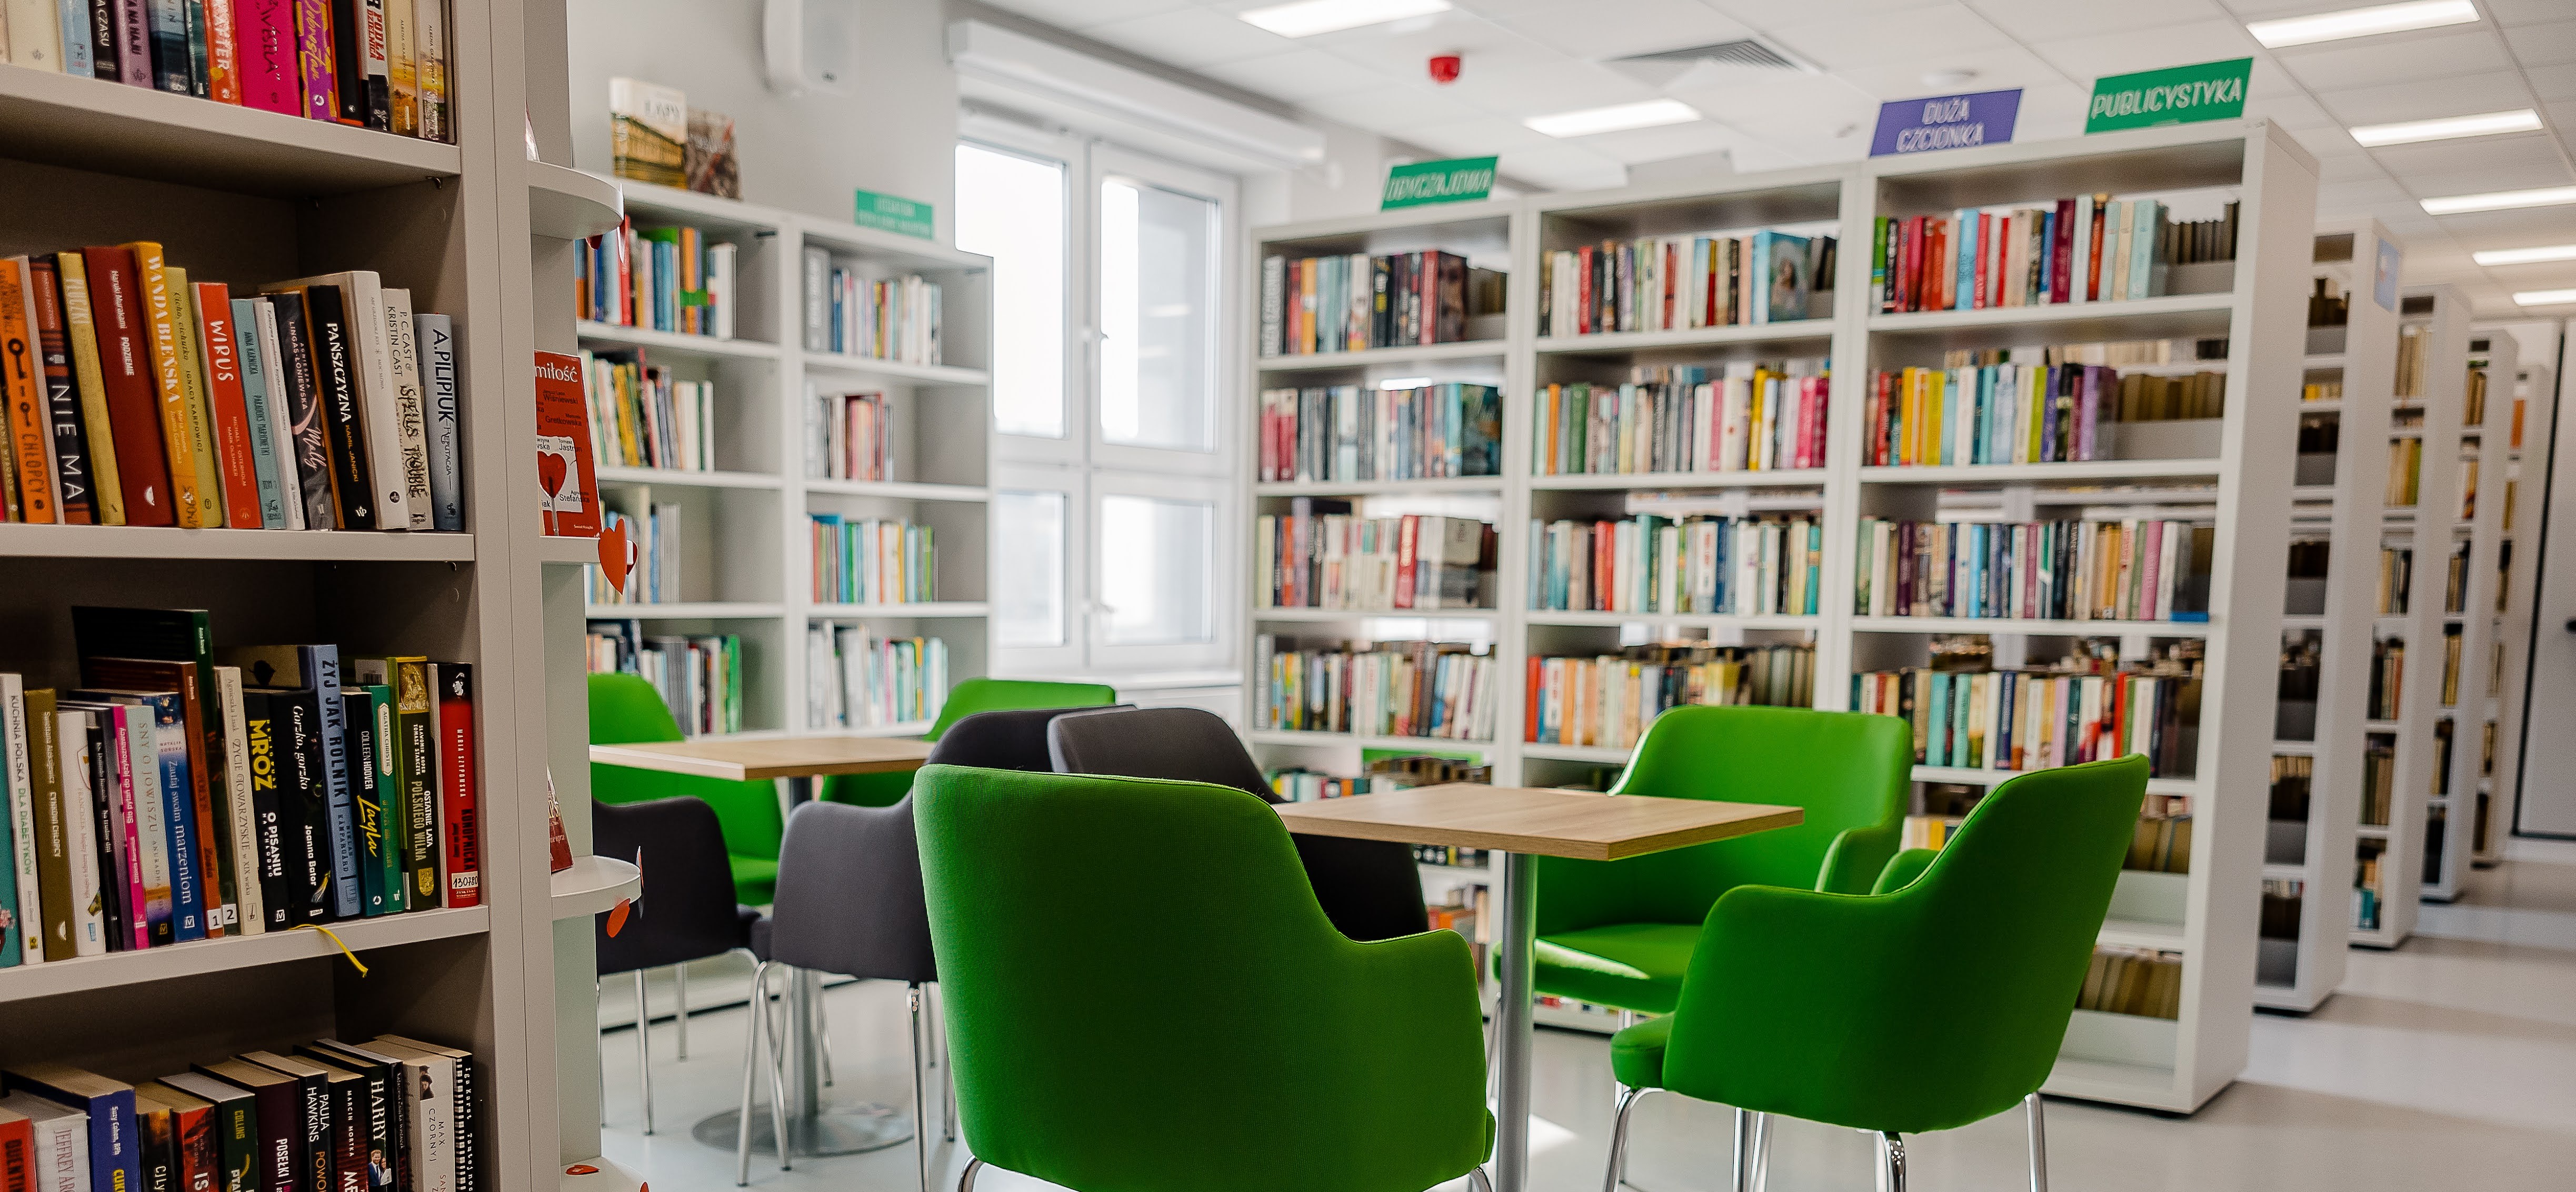 Zielone krzesła w pomieszczeniu wypełnionym półkami z książkami